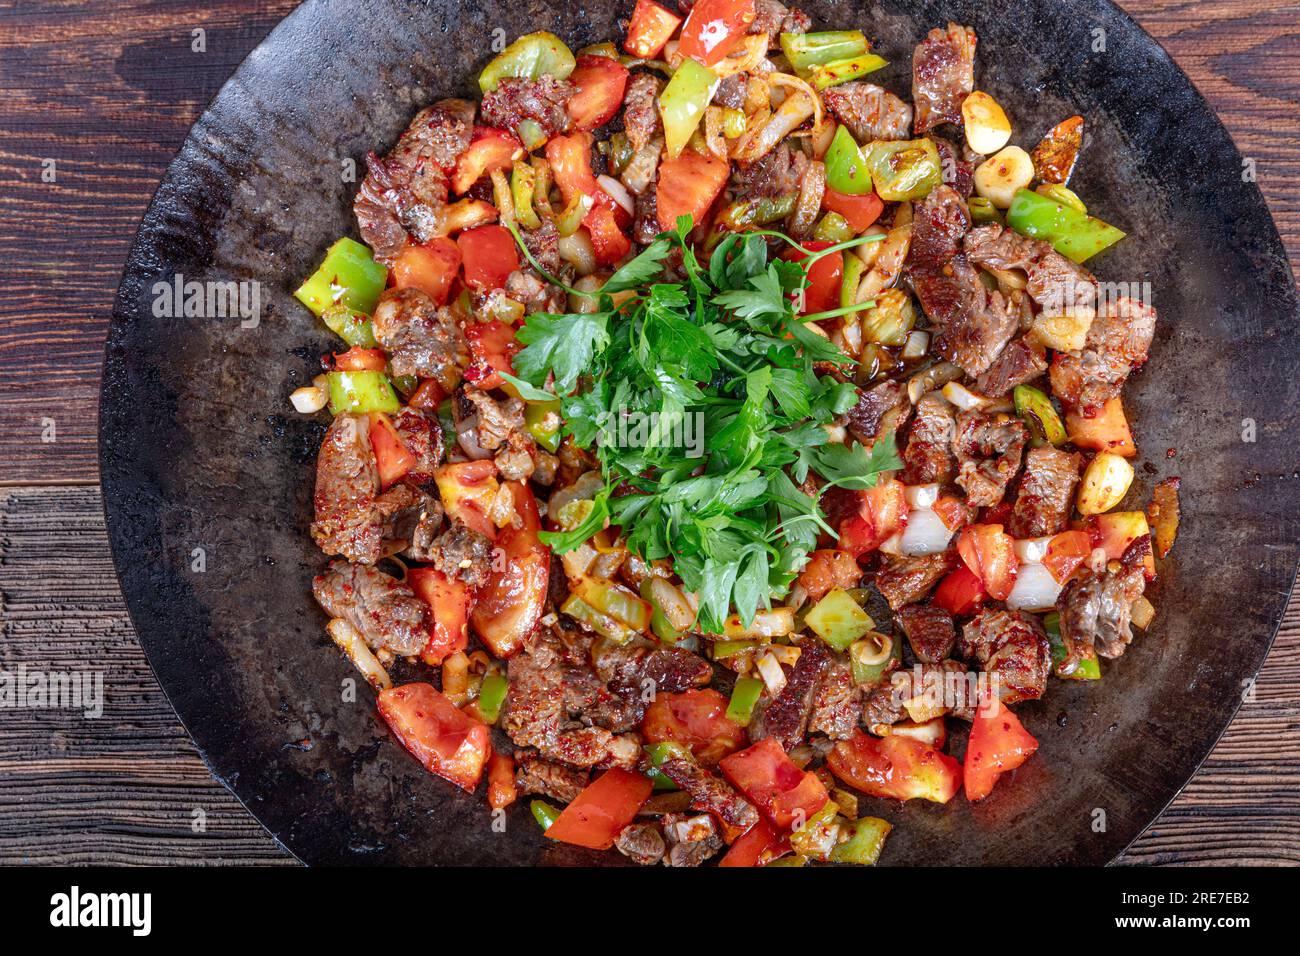 Fleisch Saute Türkisch und Sote mit Holztisch - Haarpastete Fleisch - Sac  Tava - Sac Kavurma Stockfotografie - Alamy